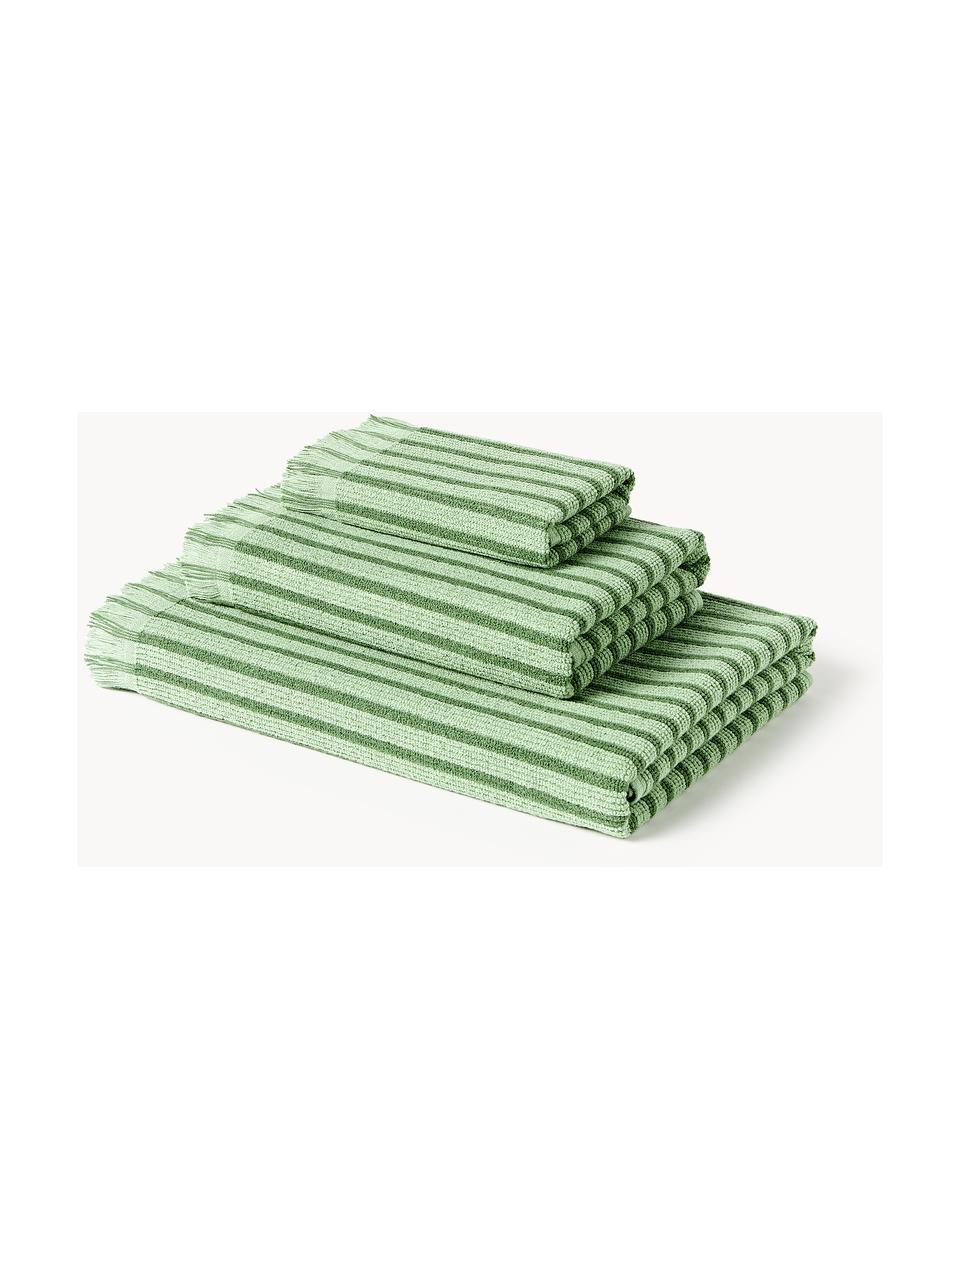 Serviettes de toilette Irma, tailles variées, Vert, 4 pièces (2 serviettes de toilette et 2 draps de bain)